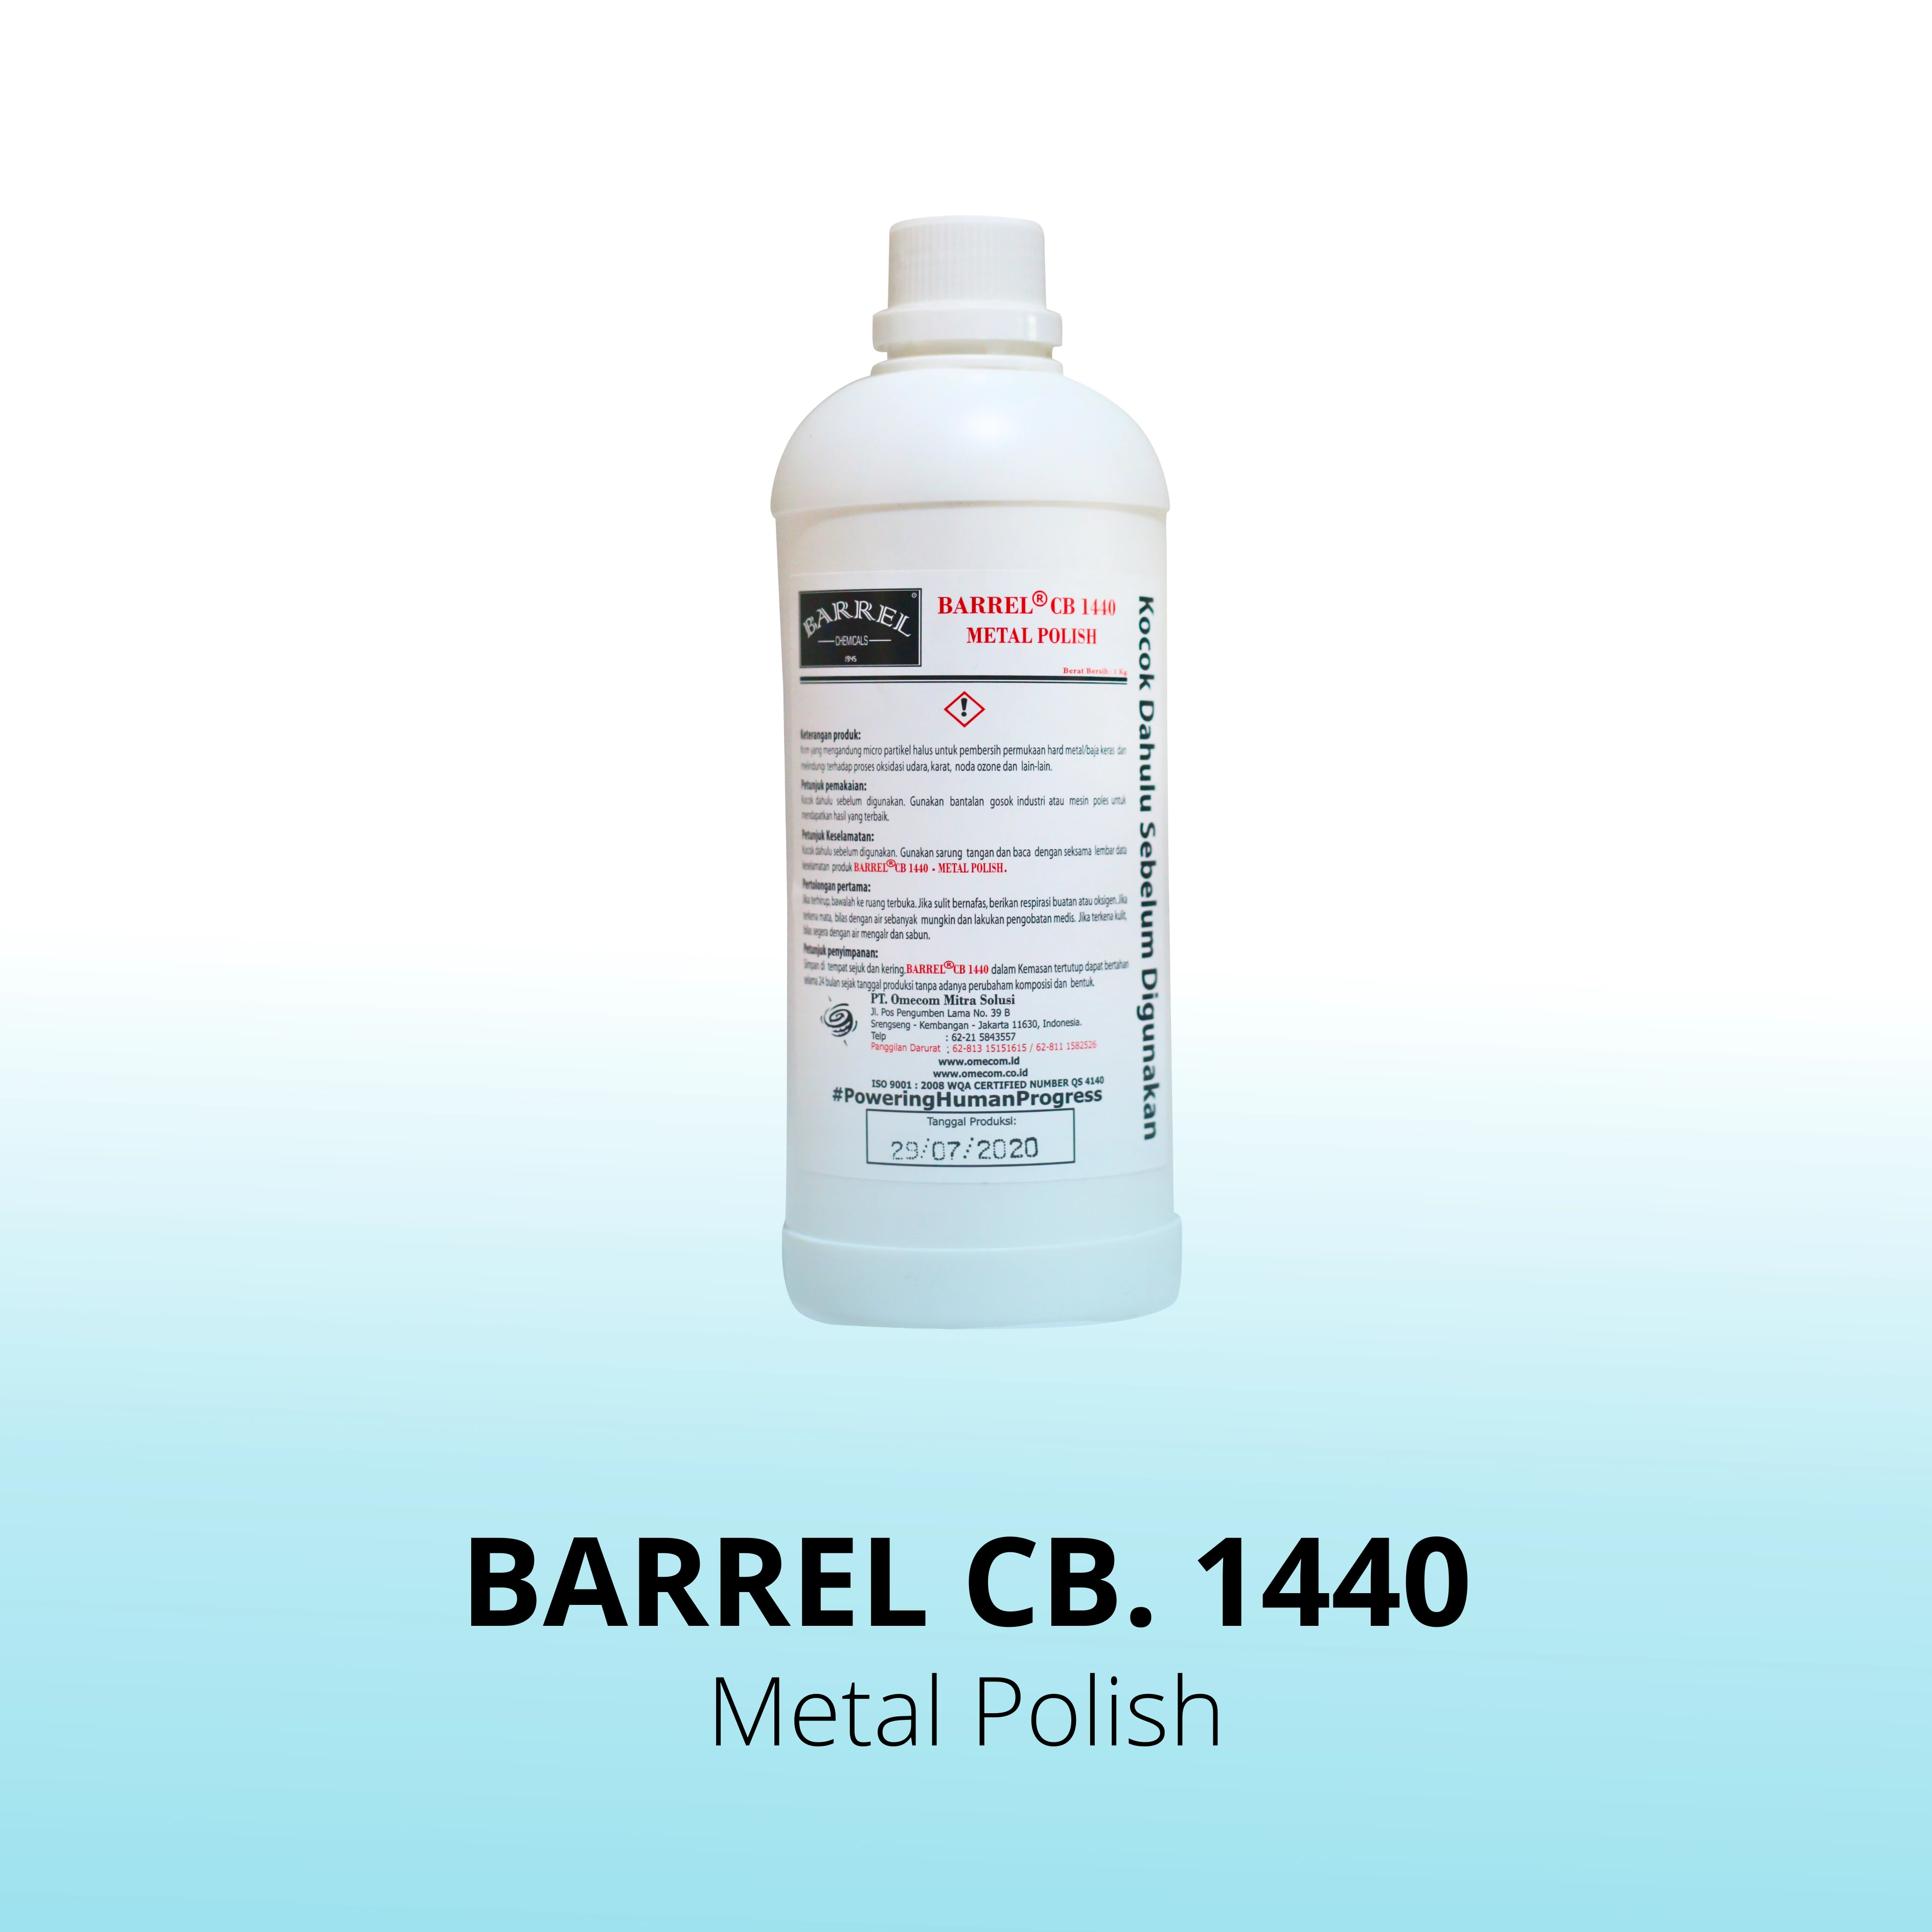 Barrel CB. 1440